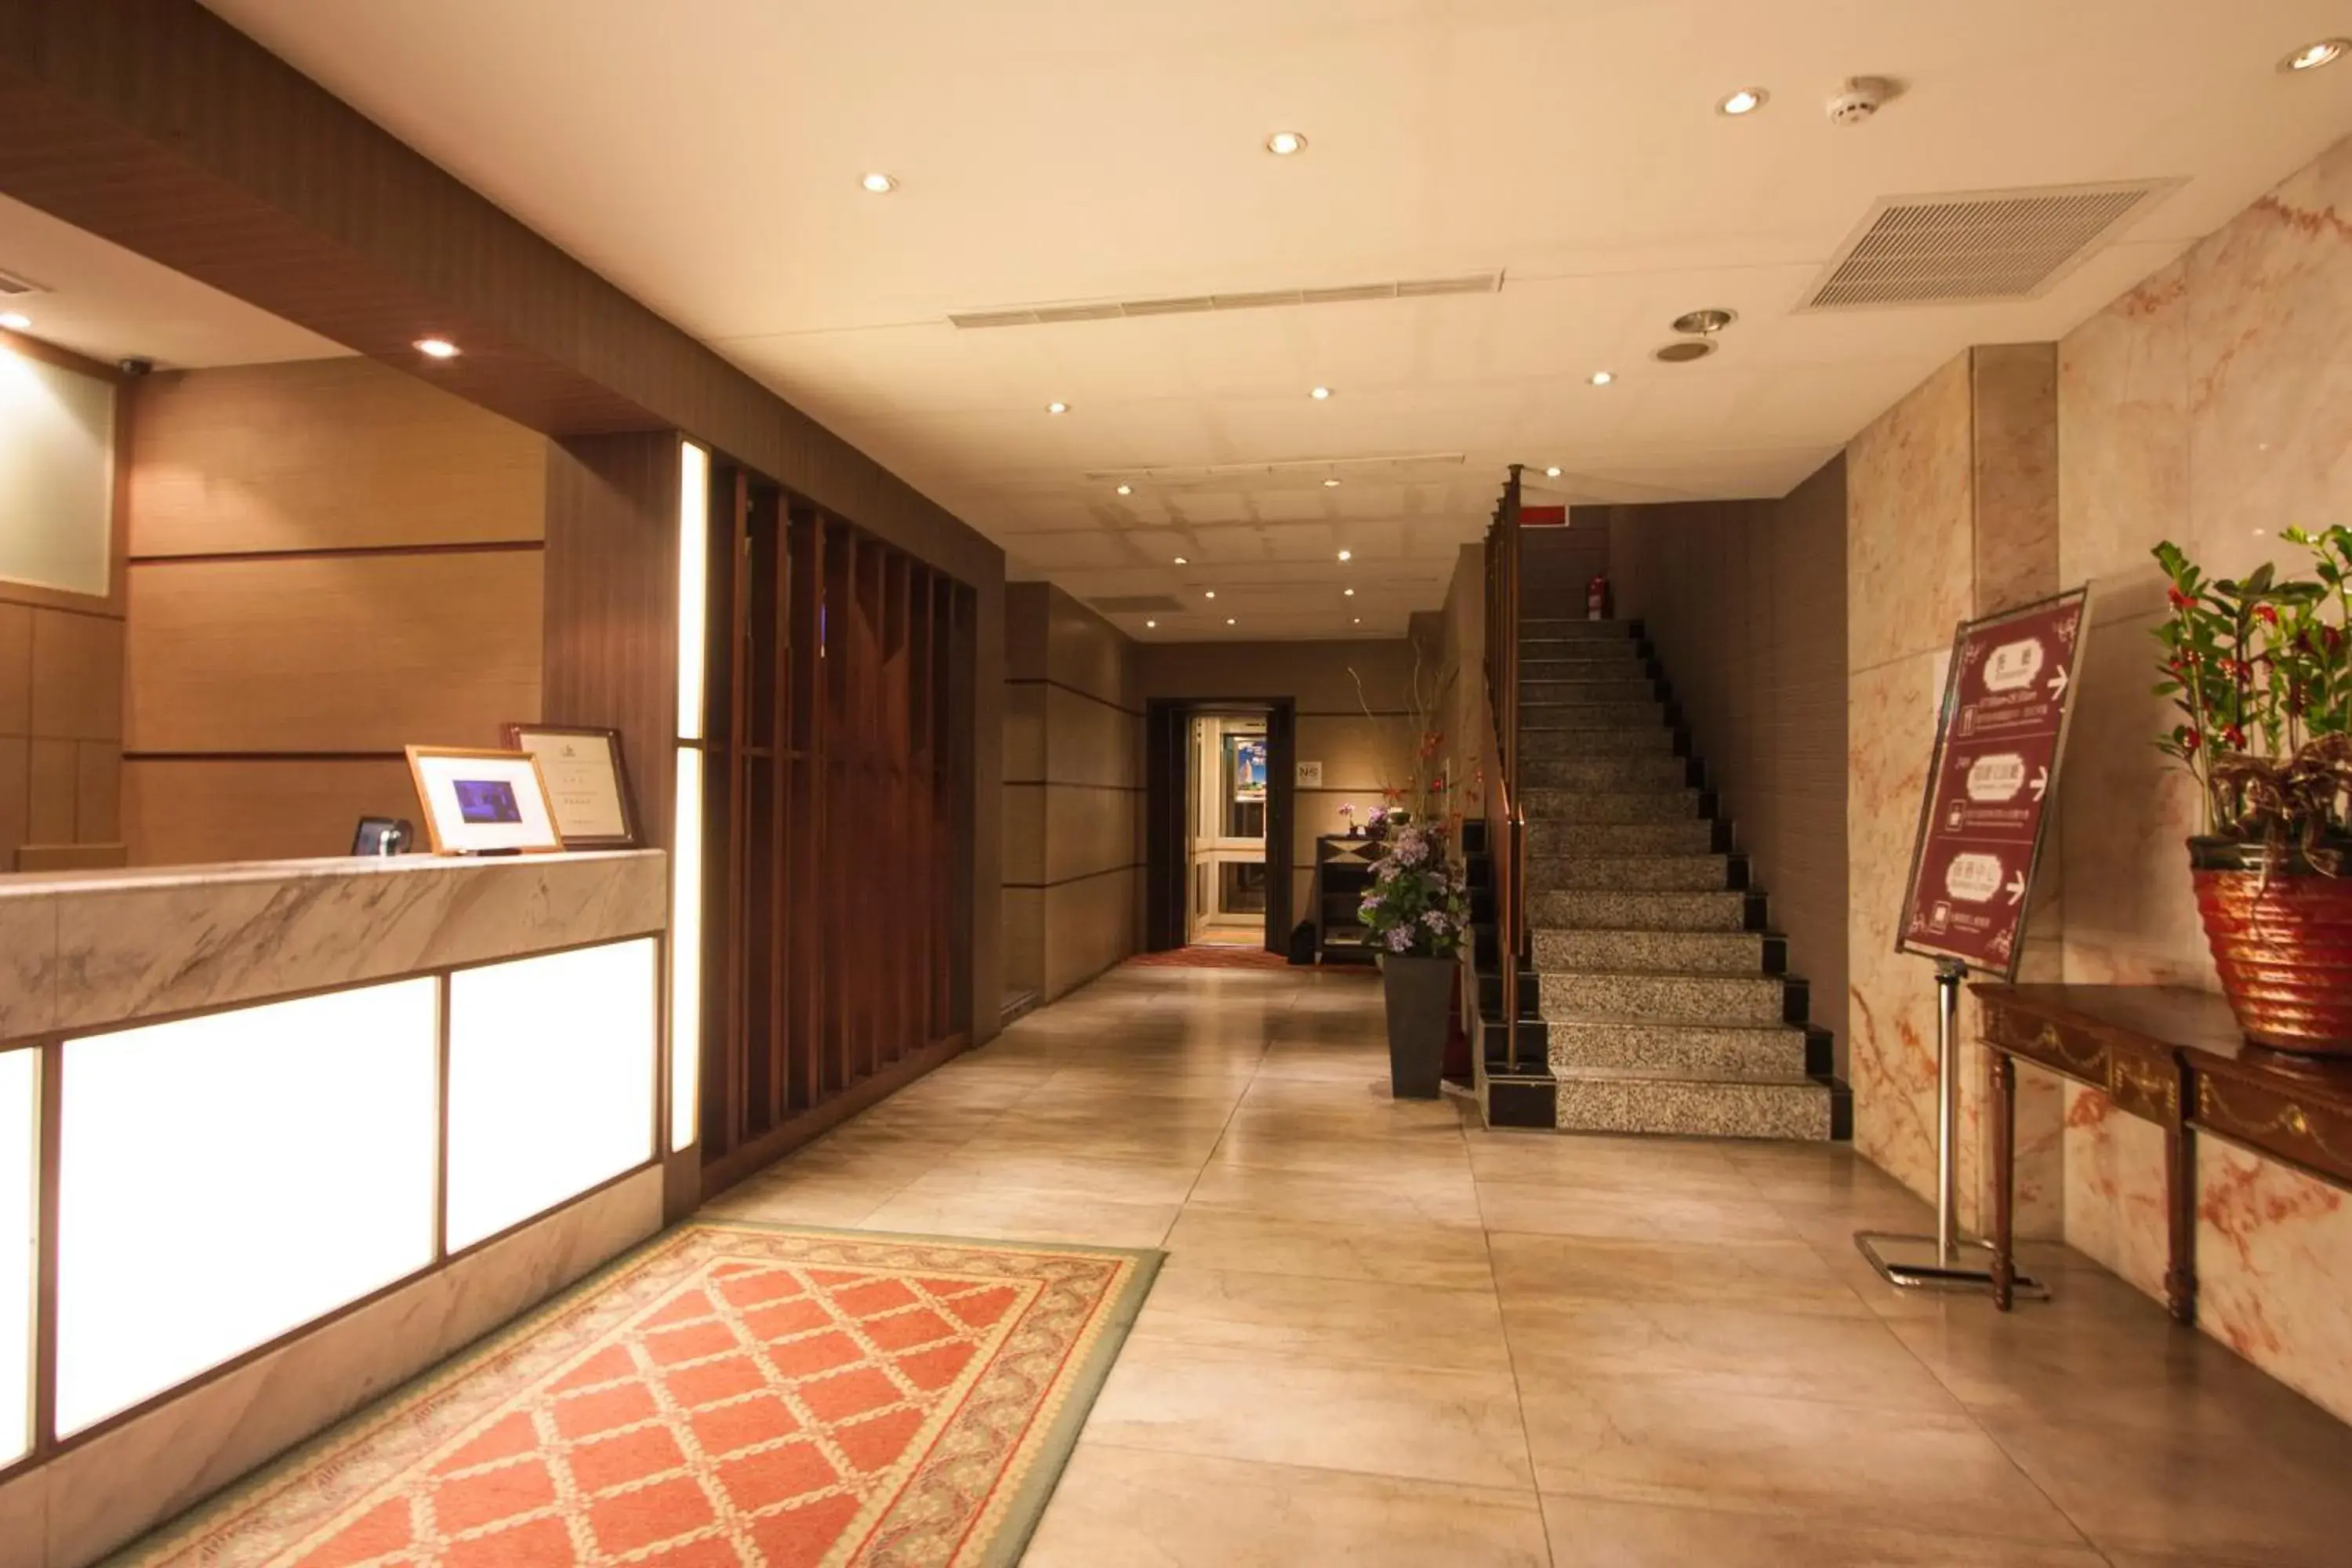 Lobby or reception, Lobby/Reception in Erin Hotel